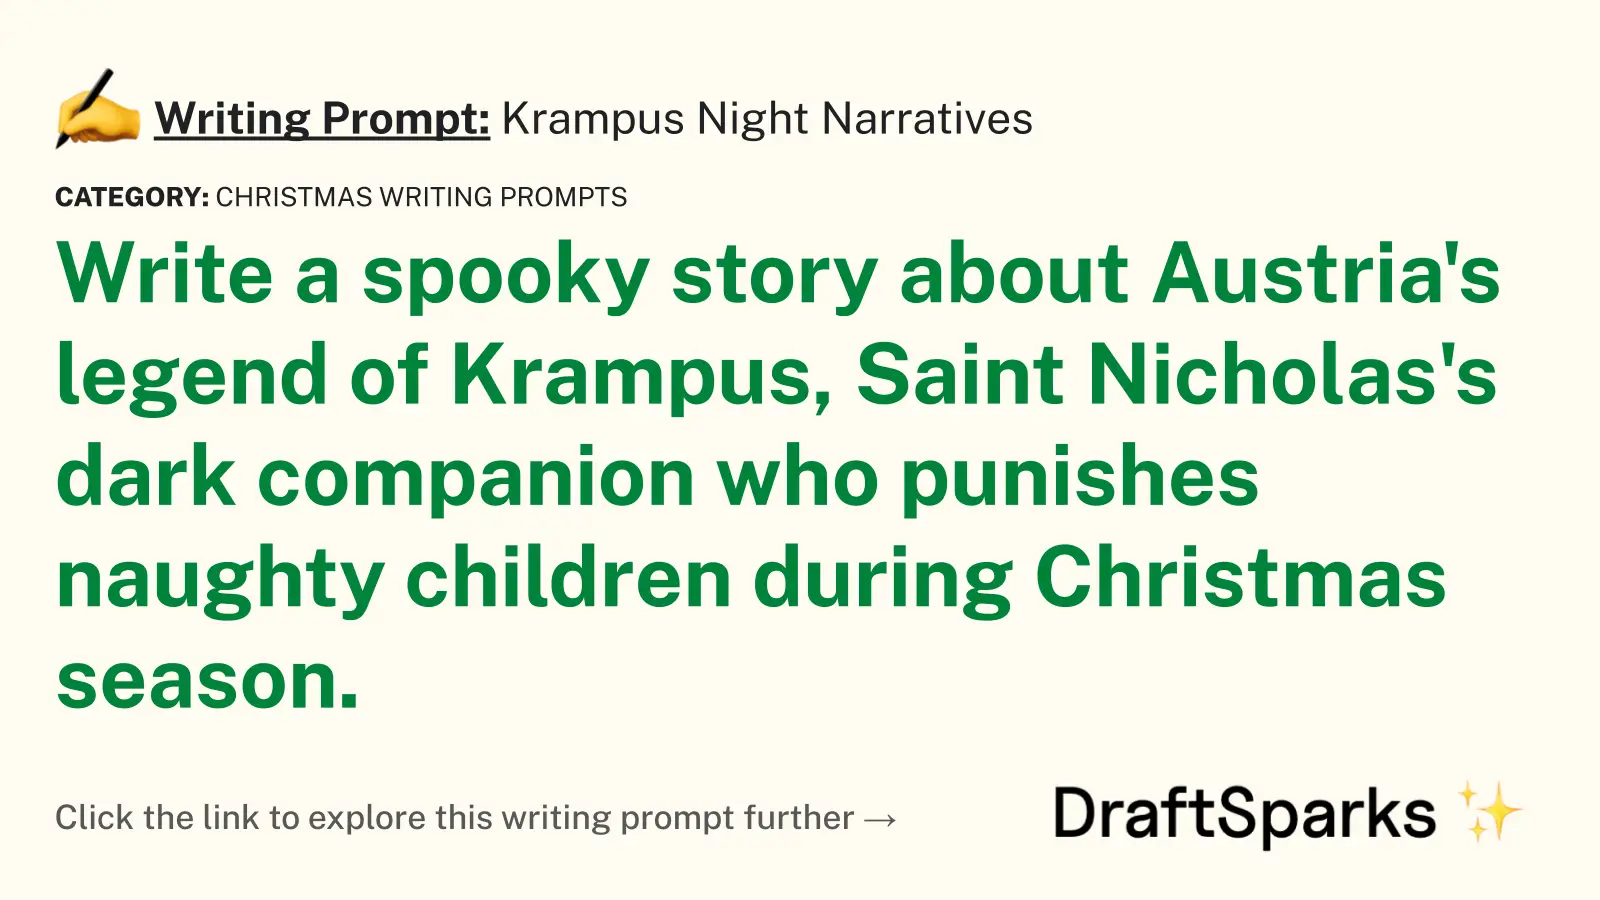 Krampus Night Narratives